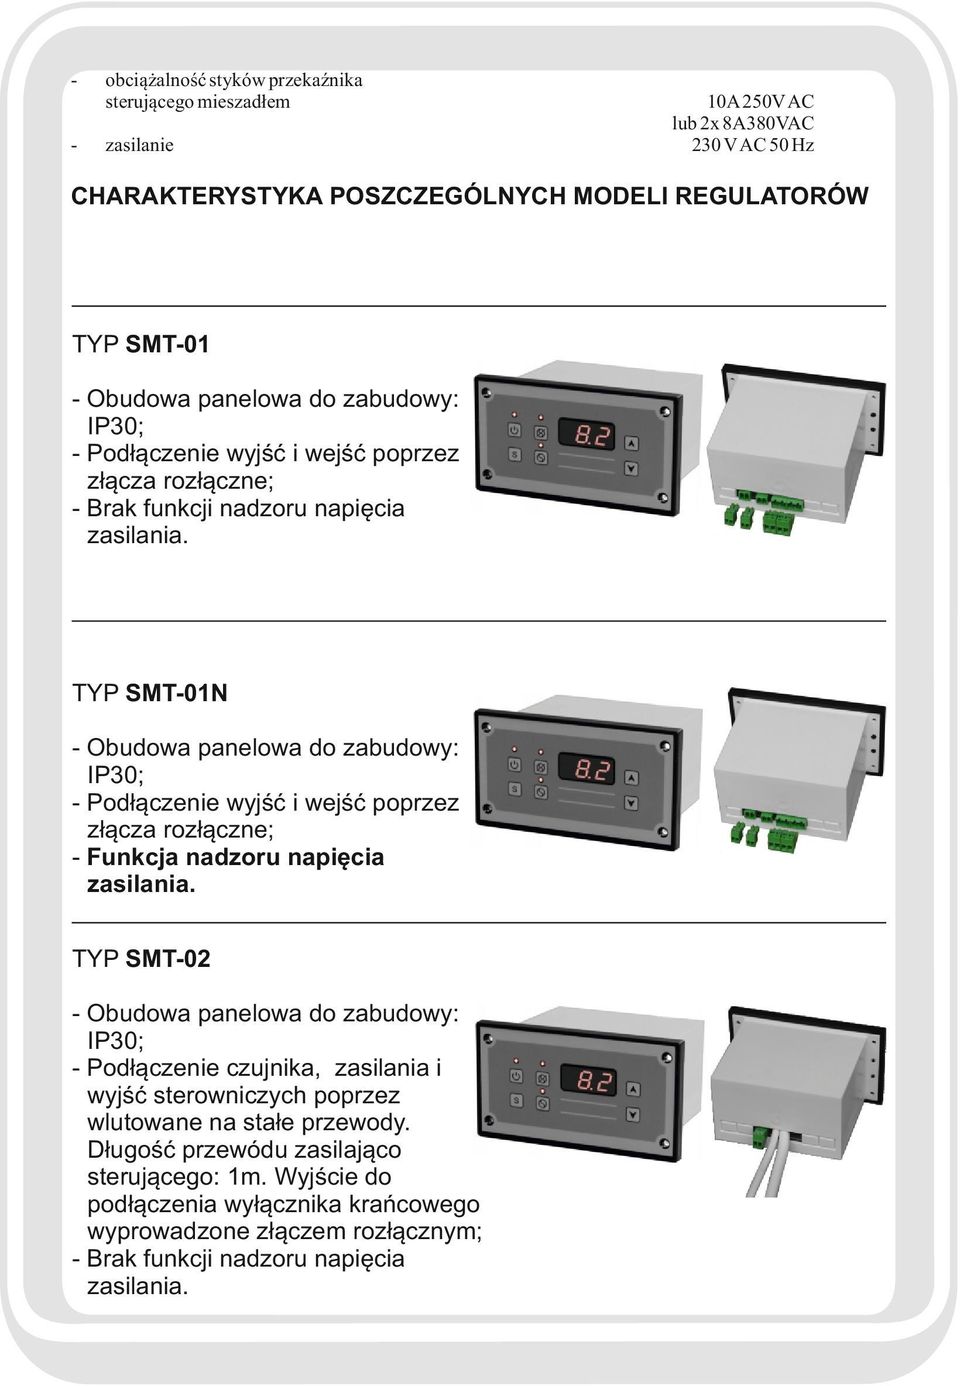 TYP SMT-01N - Obudowa panelowa do zabudowy: IP30; - Podłączenie wyjść i wejść poprzez złącza rozłączne; - Funkcja nadzoru napięcia zasilania.